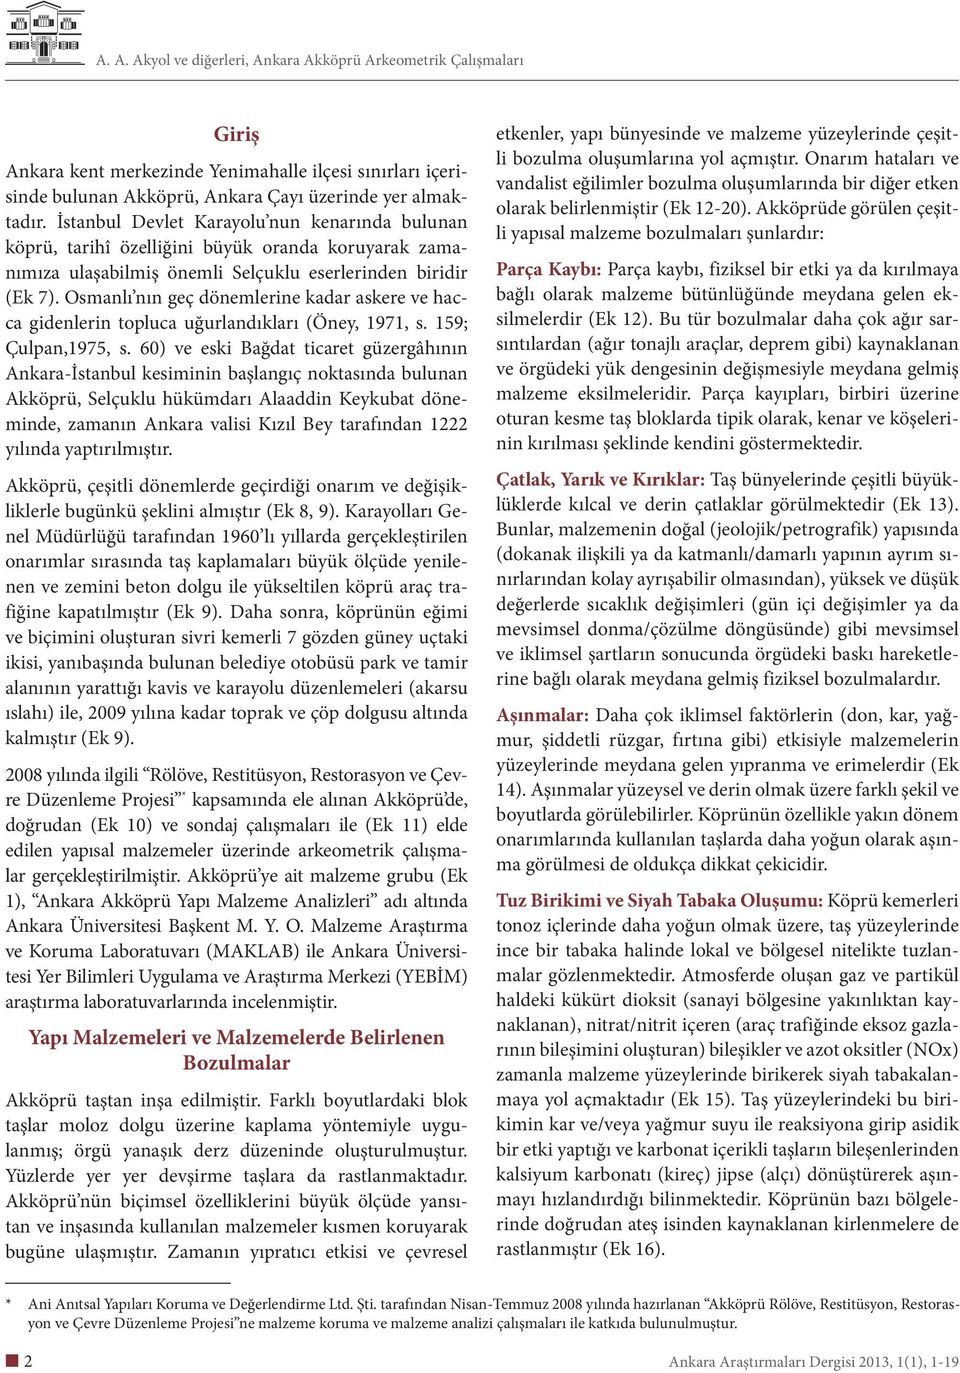 Osmanlı nın geç dönemlerine kadar askere ve hacca gidenlerin topluca uğurlandıkları (Öney, 1971, s. 159; Çulpan,1975, s.